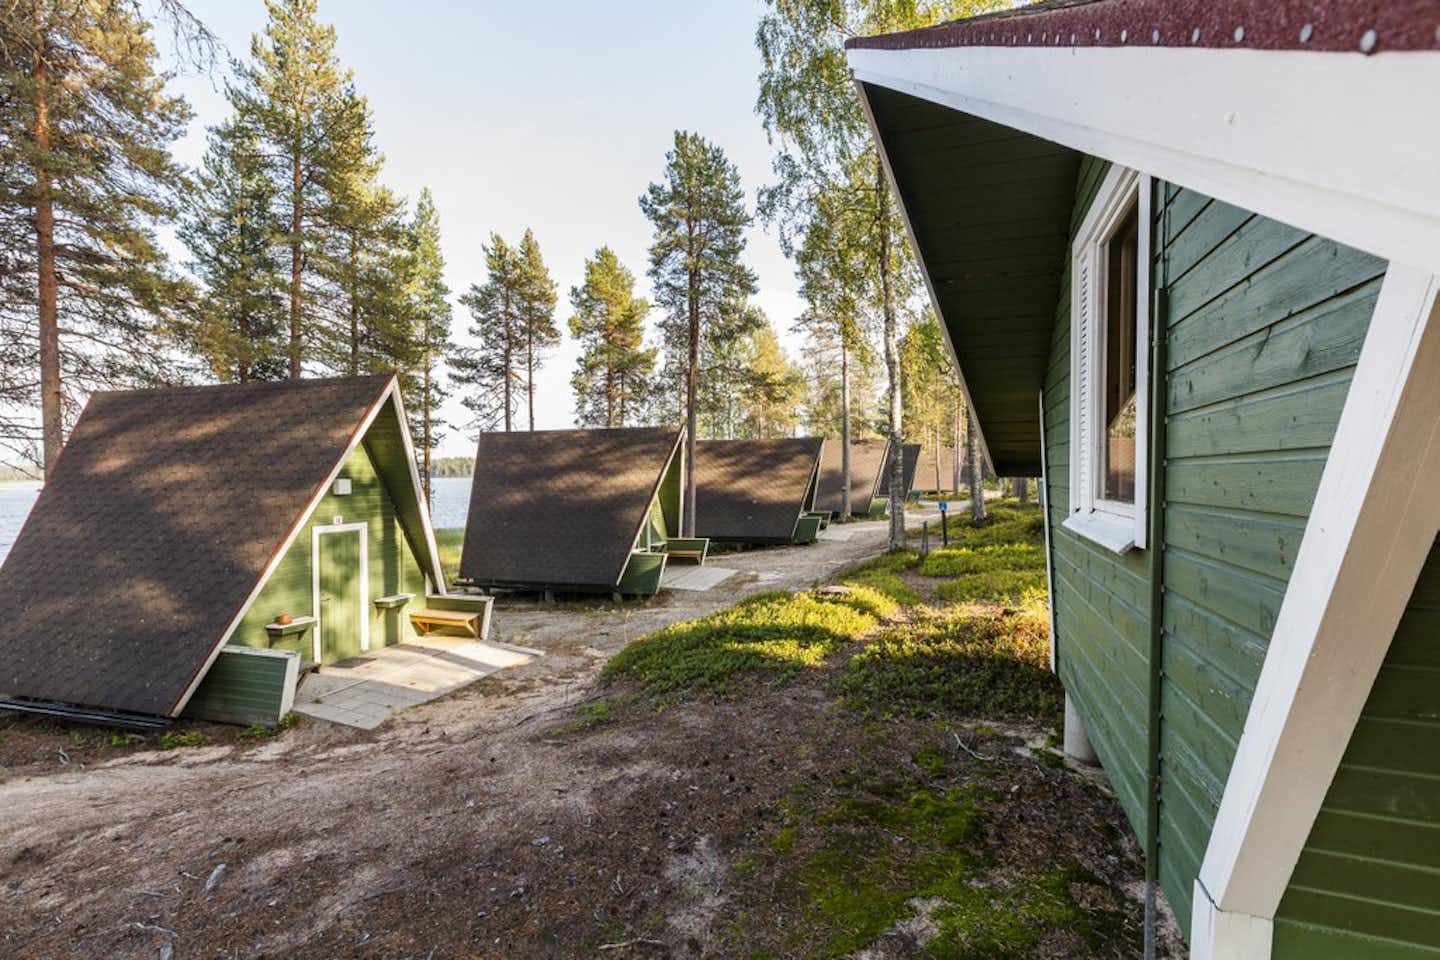 Ranuanjärvi Camping - Mobilheime auf dem Campingplatz